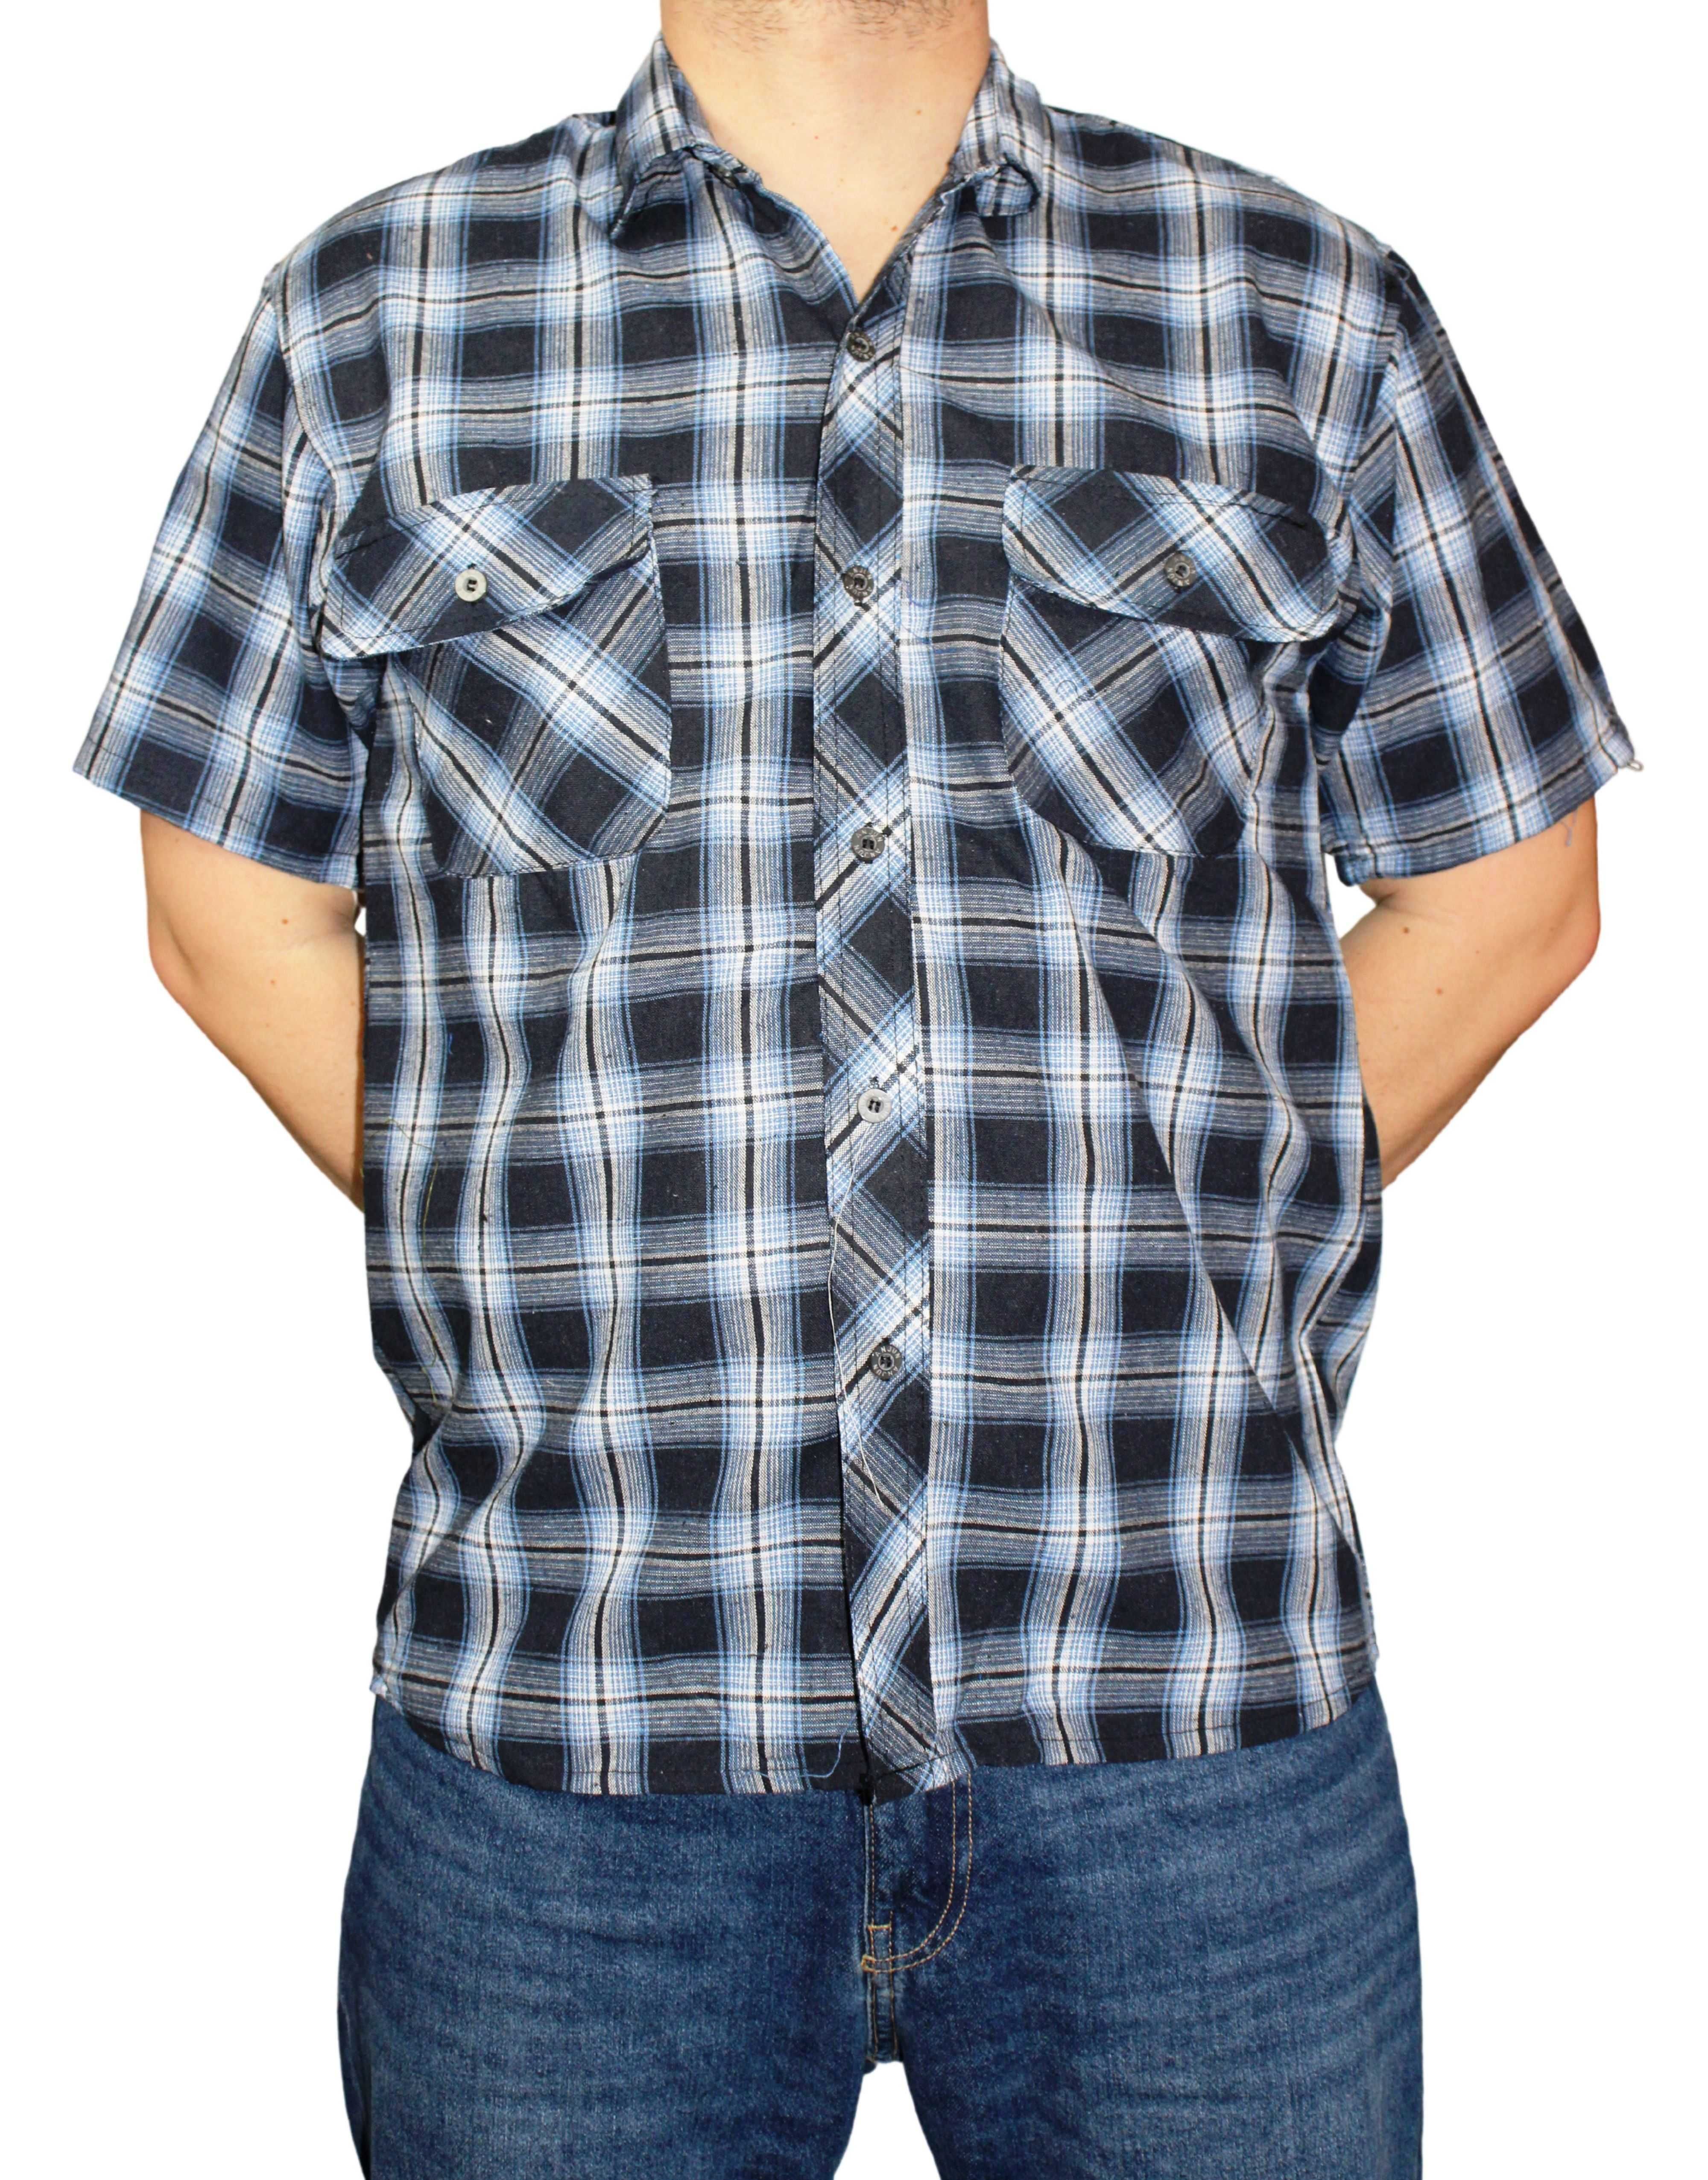 2x Koszula męska w krate krótki rękaw rozmiary XL-5XL